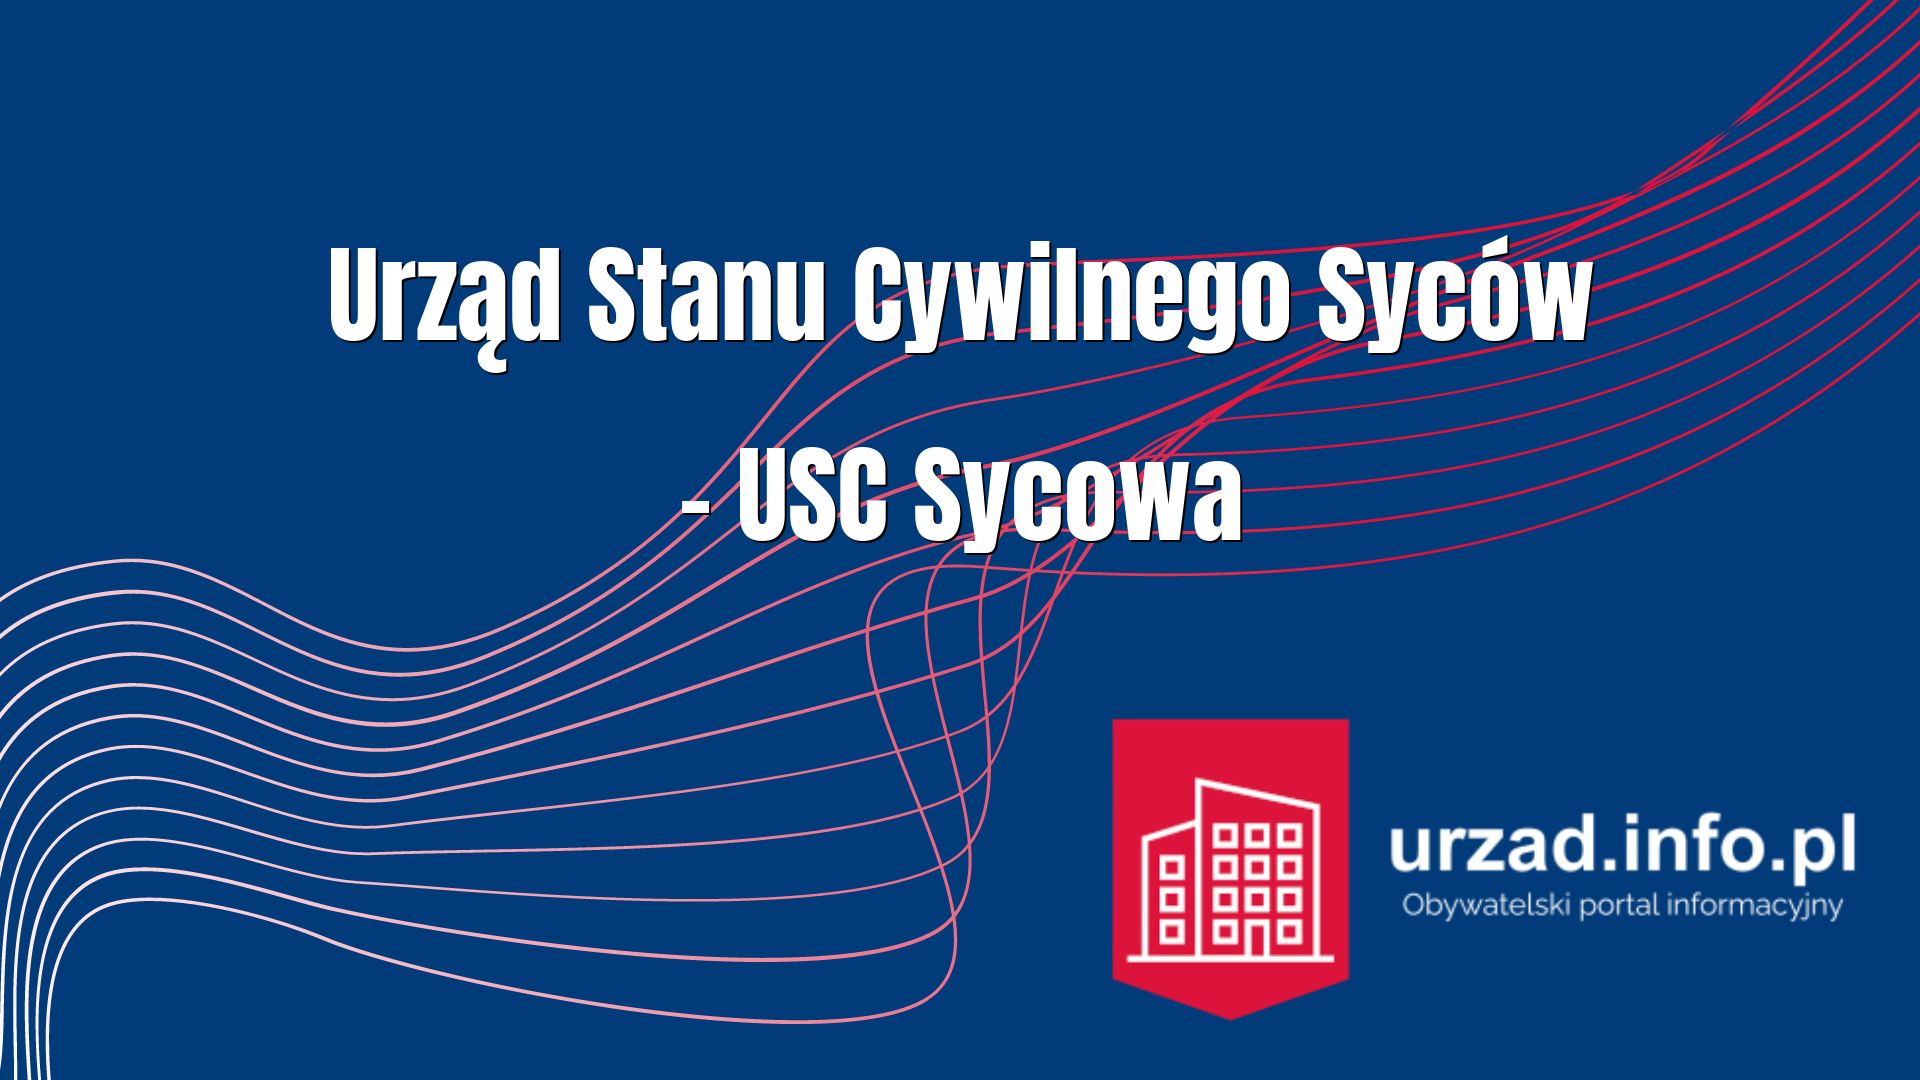 Urząd Stanu Cywilnego Syców – USC Sycowa